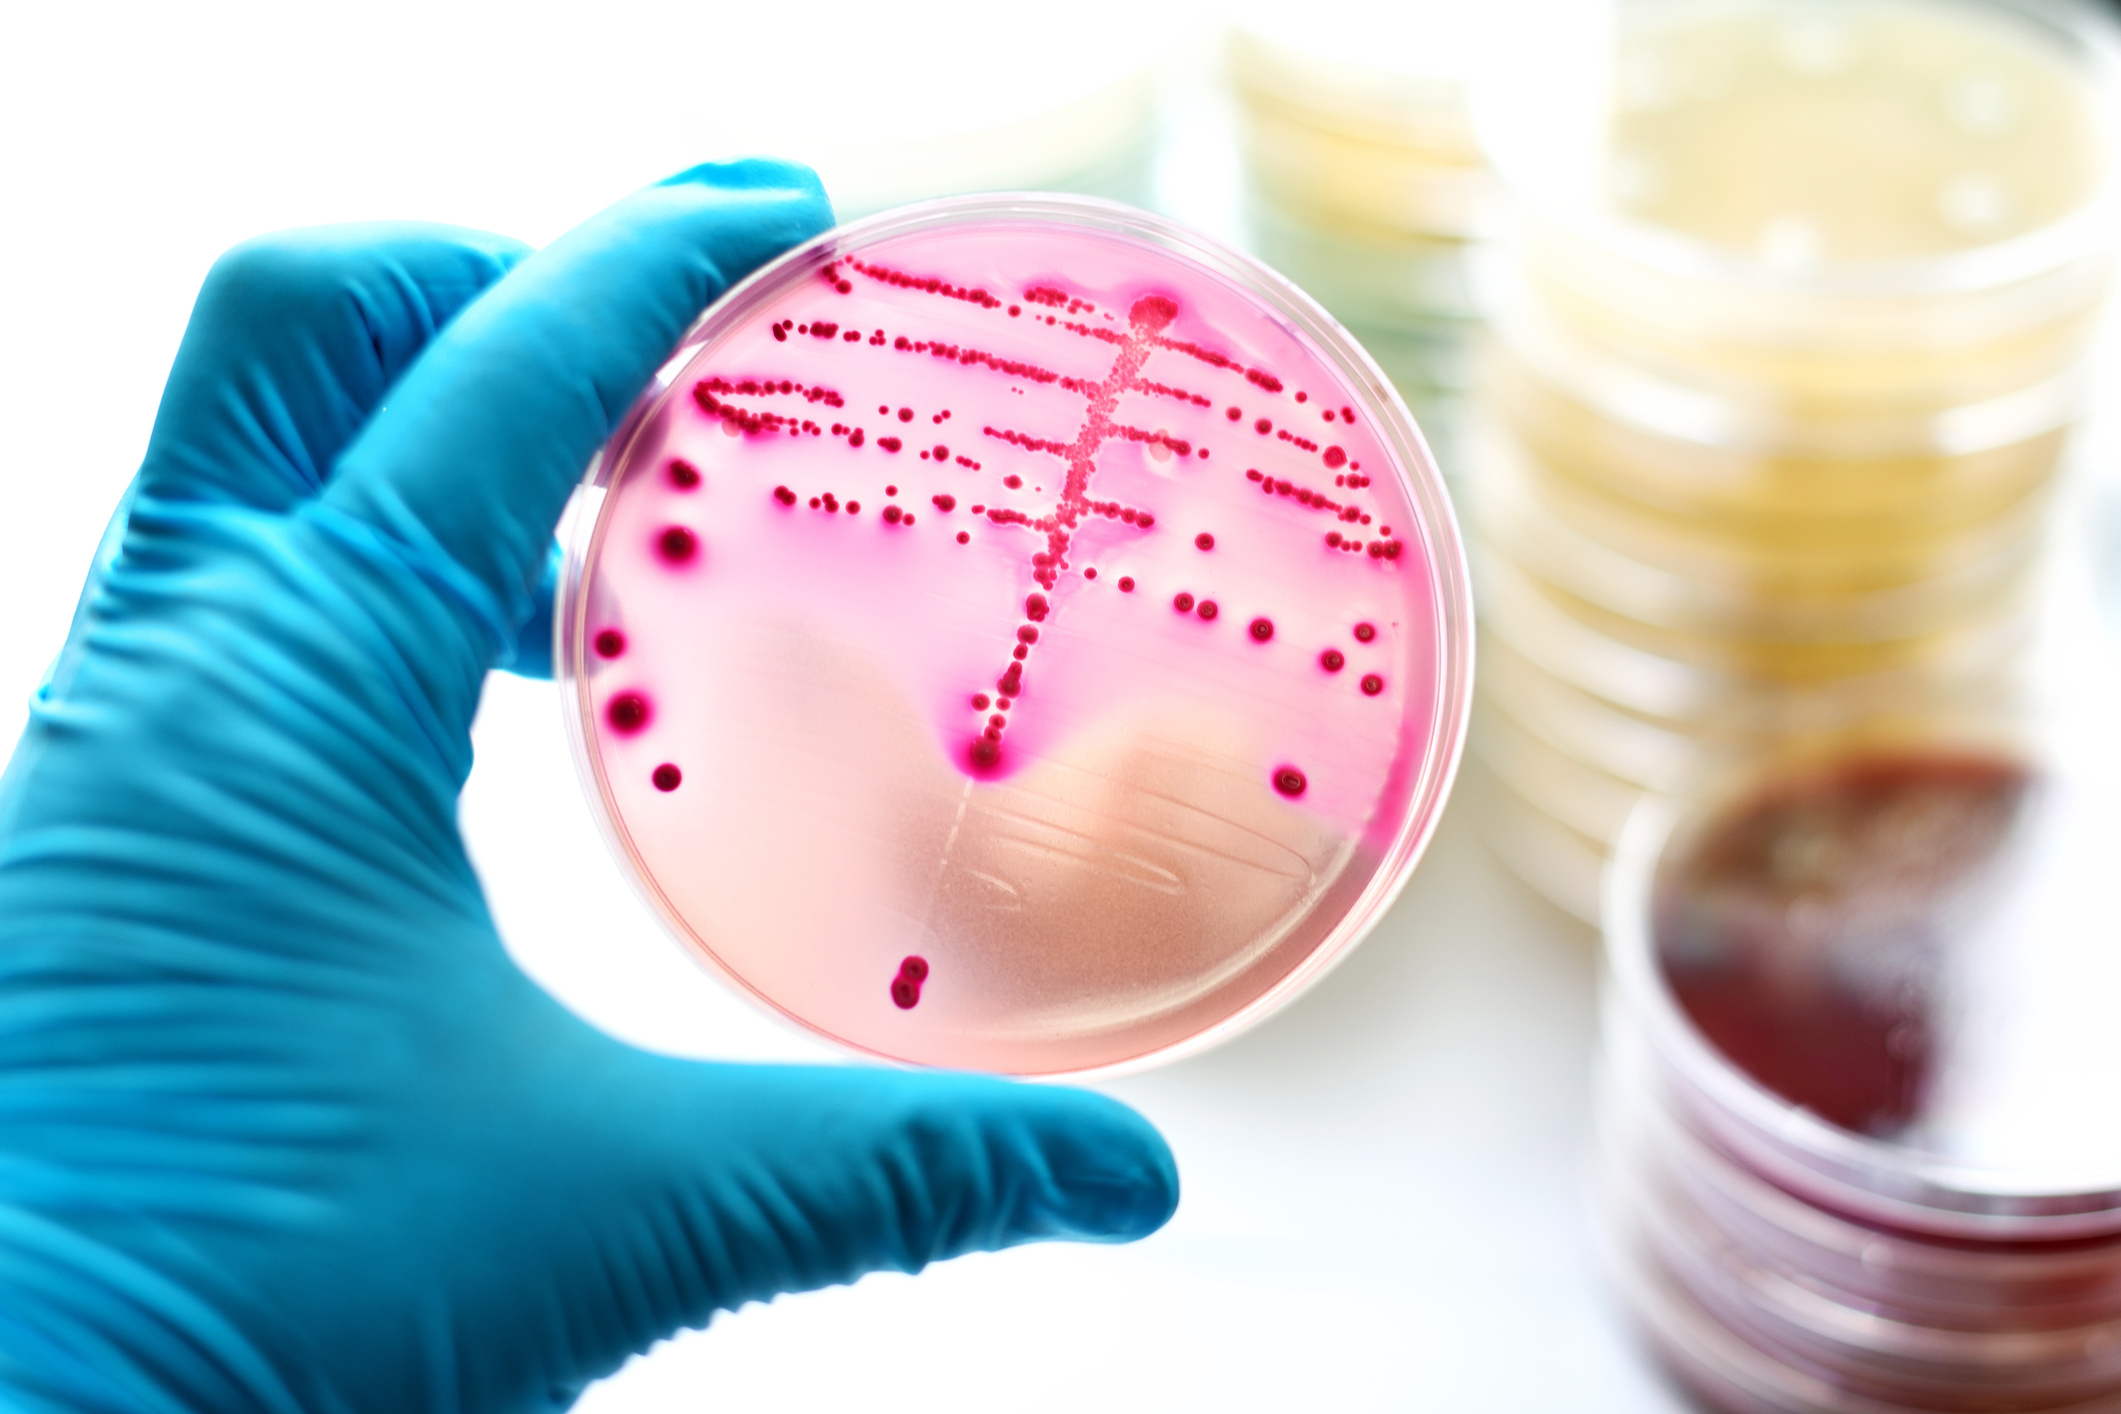 placa de cultura de bactérias senso segurada por uma mão com luva azul. A placa de bactéria tem pontinhas cor de rosa.